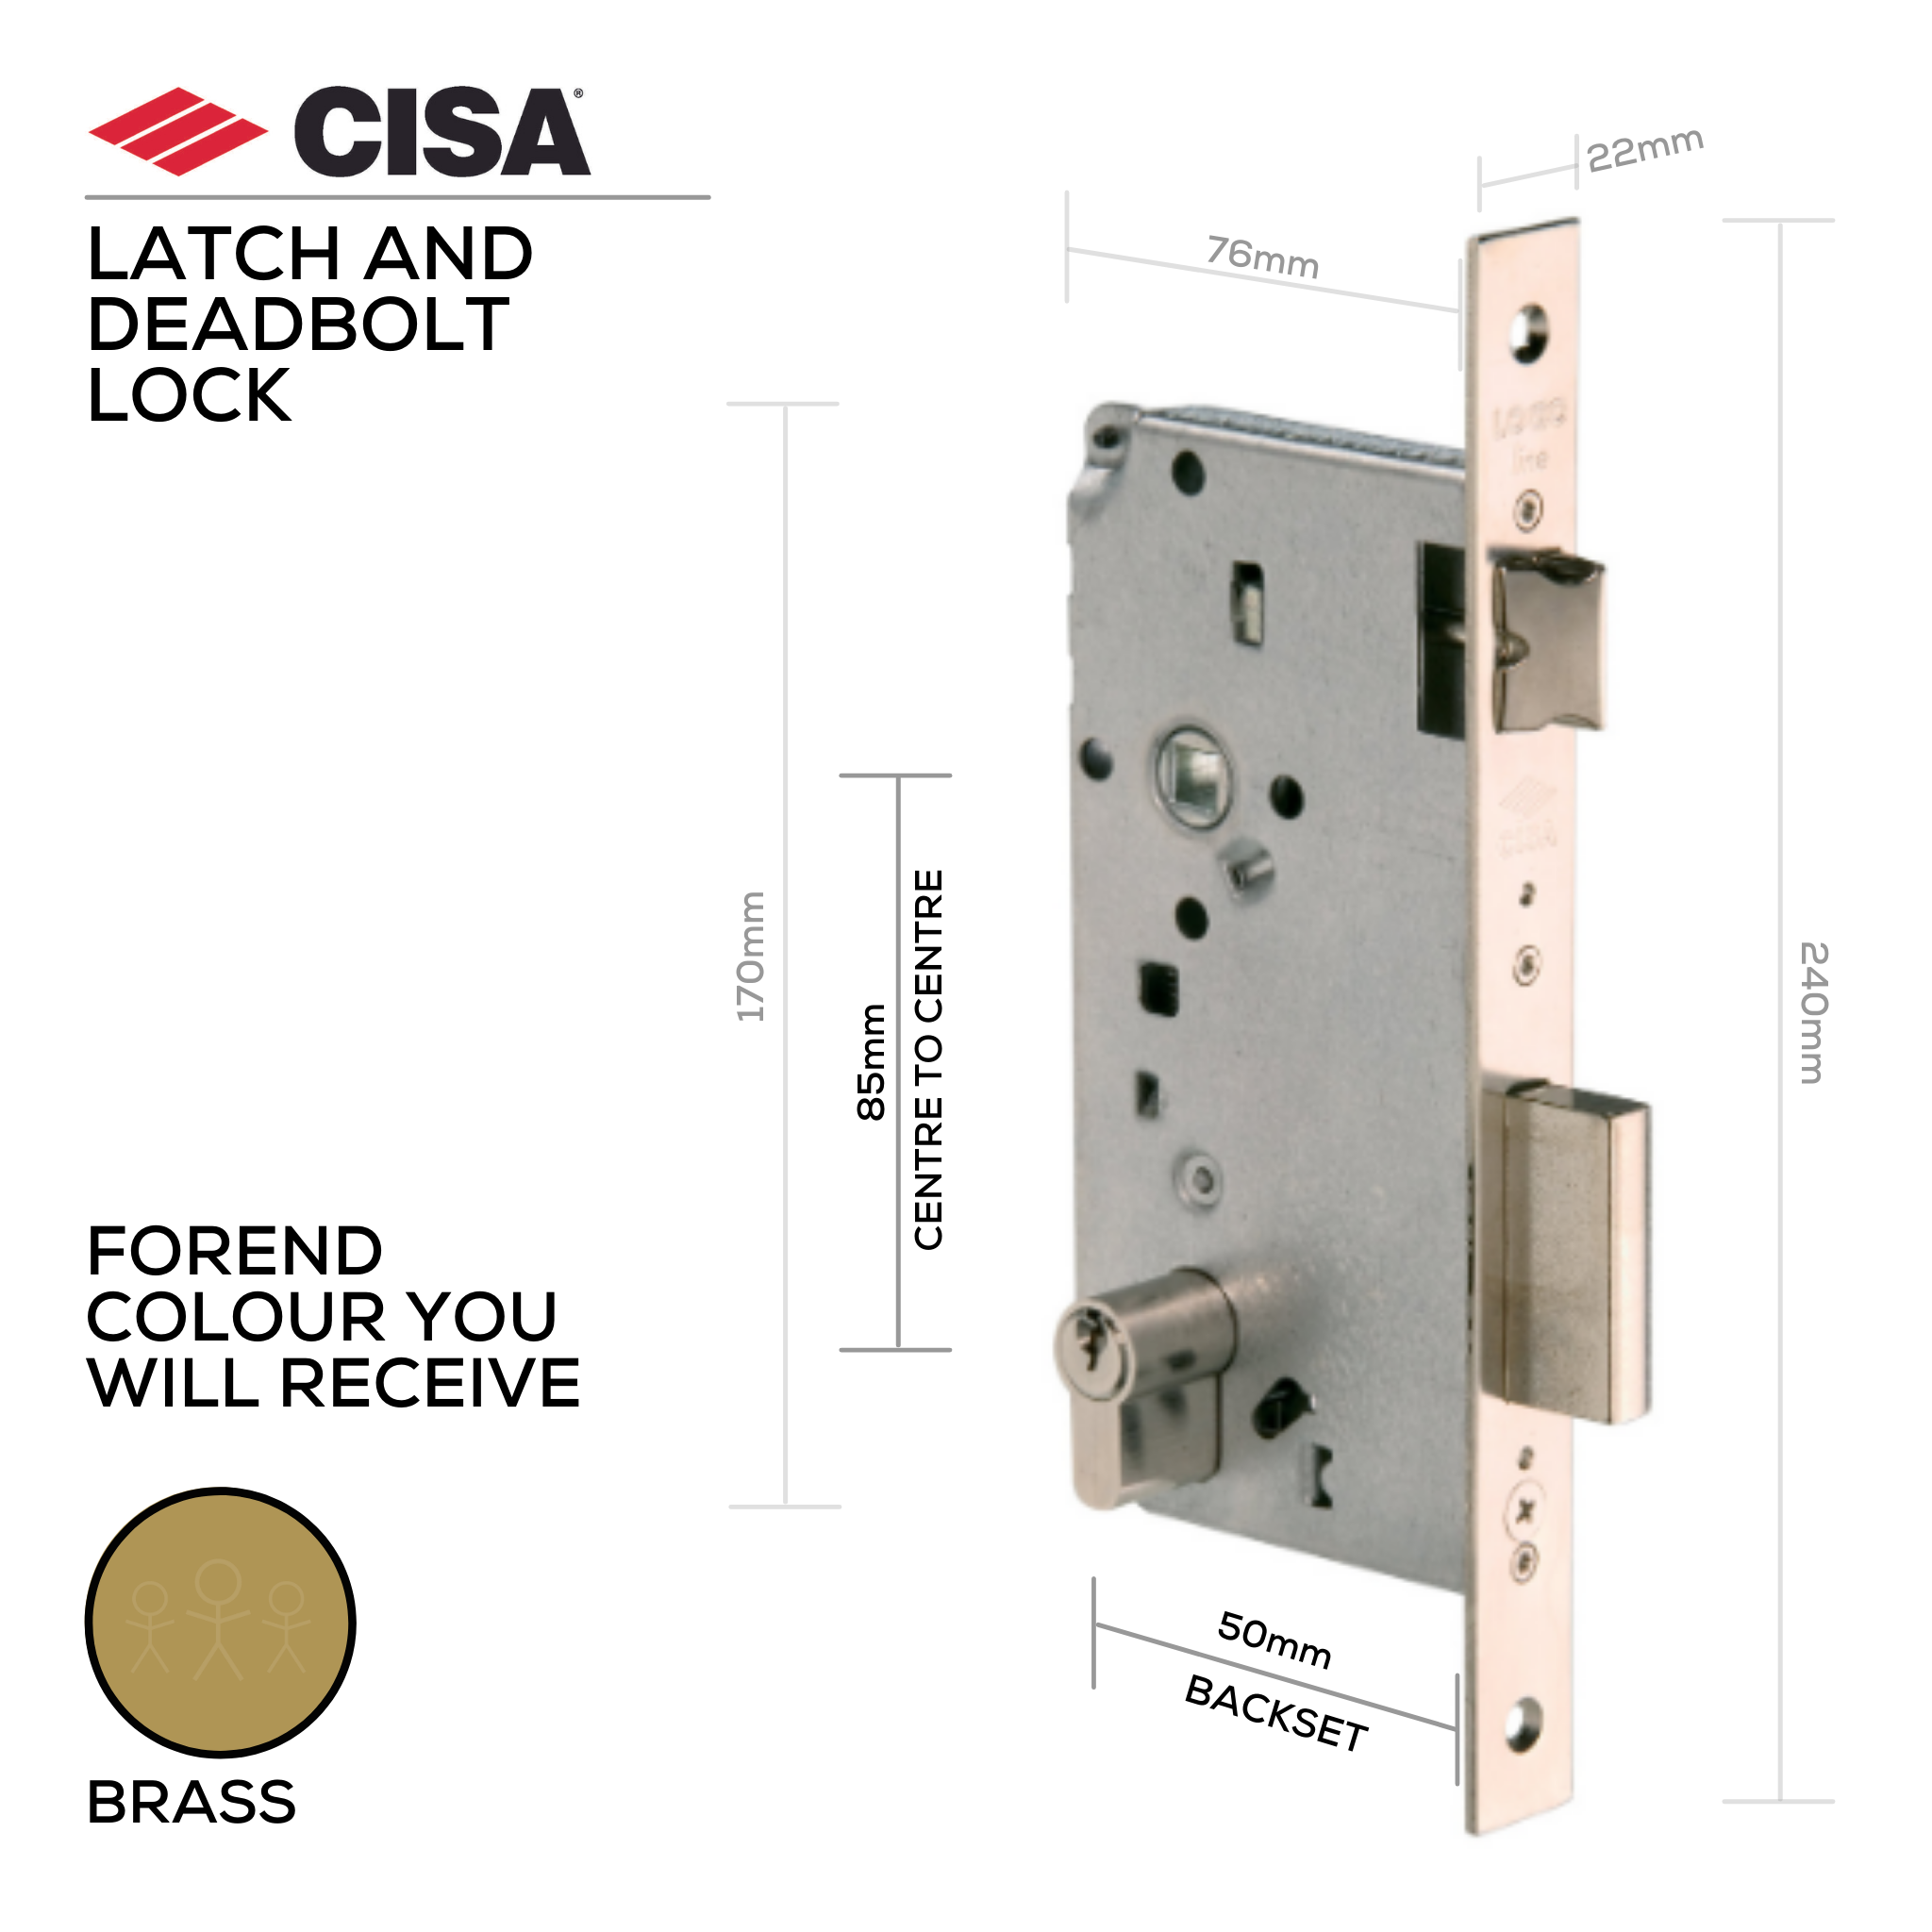 5C611-50-00, Latch & Deadbolt Lock, Euro Cylinder, Excluding Cylinder, 50mm (Backset), 85mm (ctc), Brass, CISA